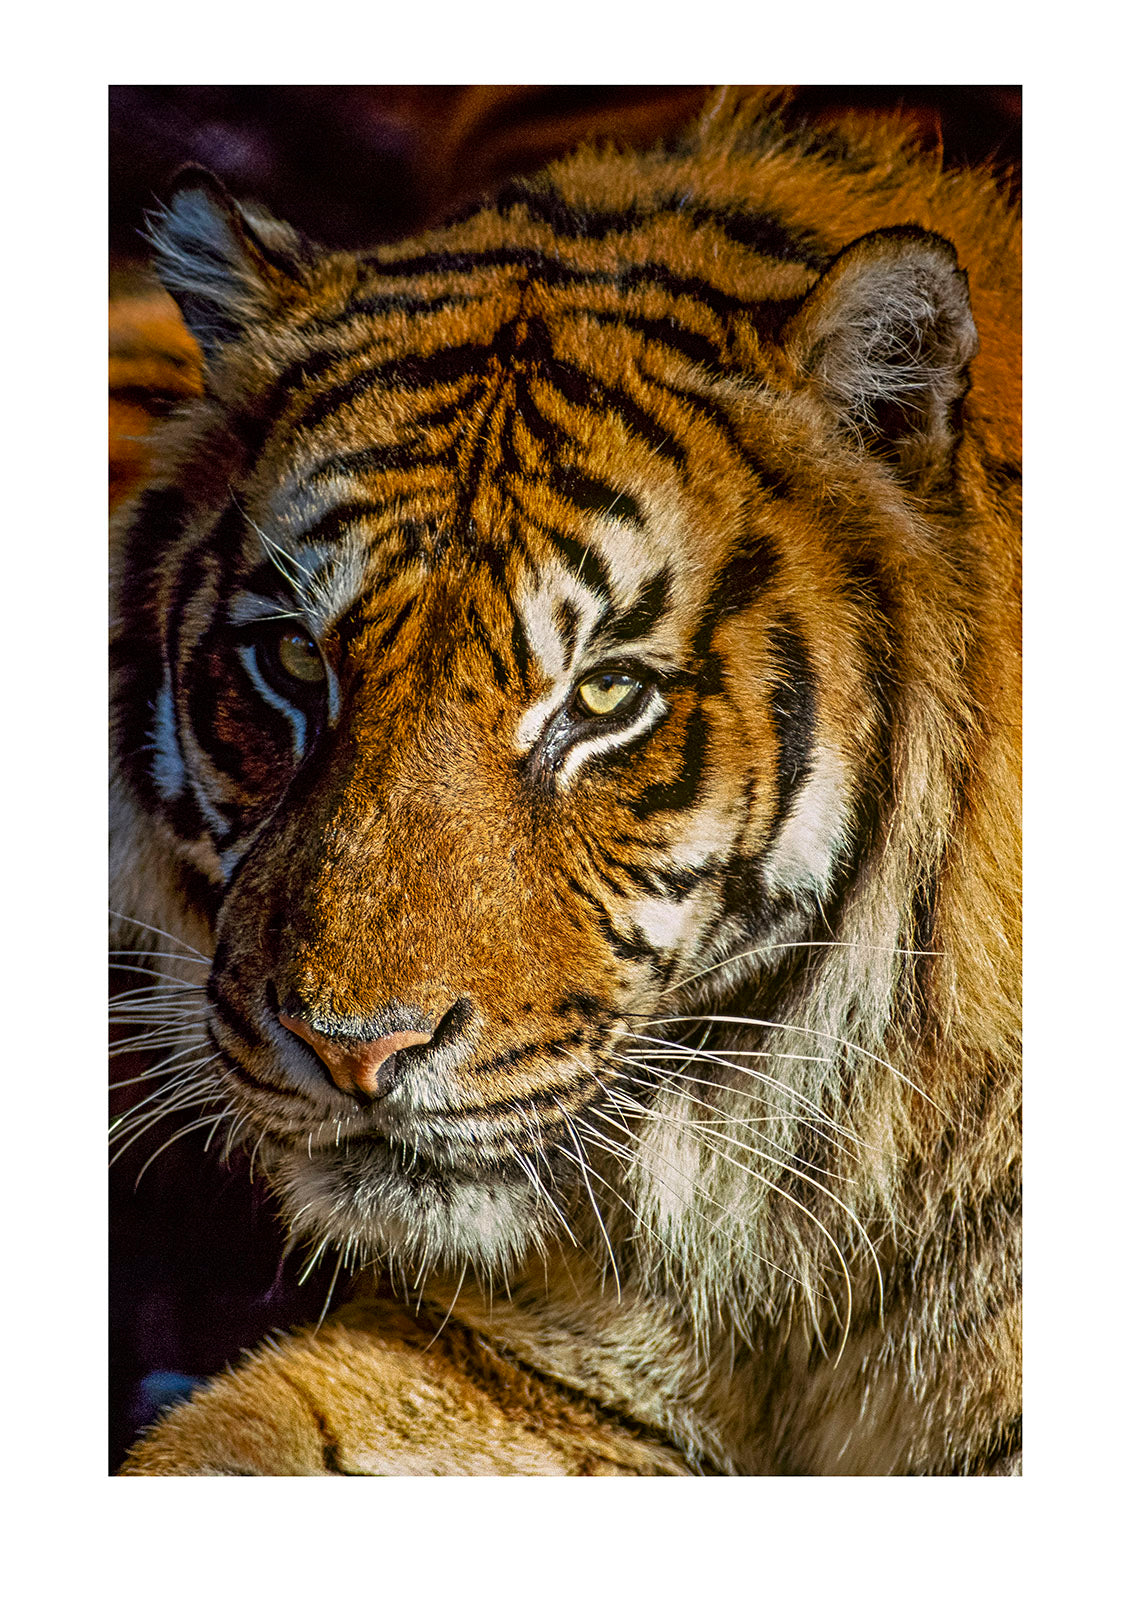 Portrait of a majestic hunter, the Sumatran male tiger. Melbourne Zoo, Victoria, Australia.